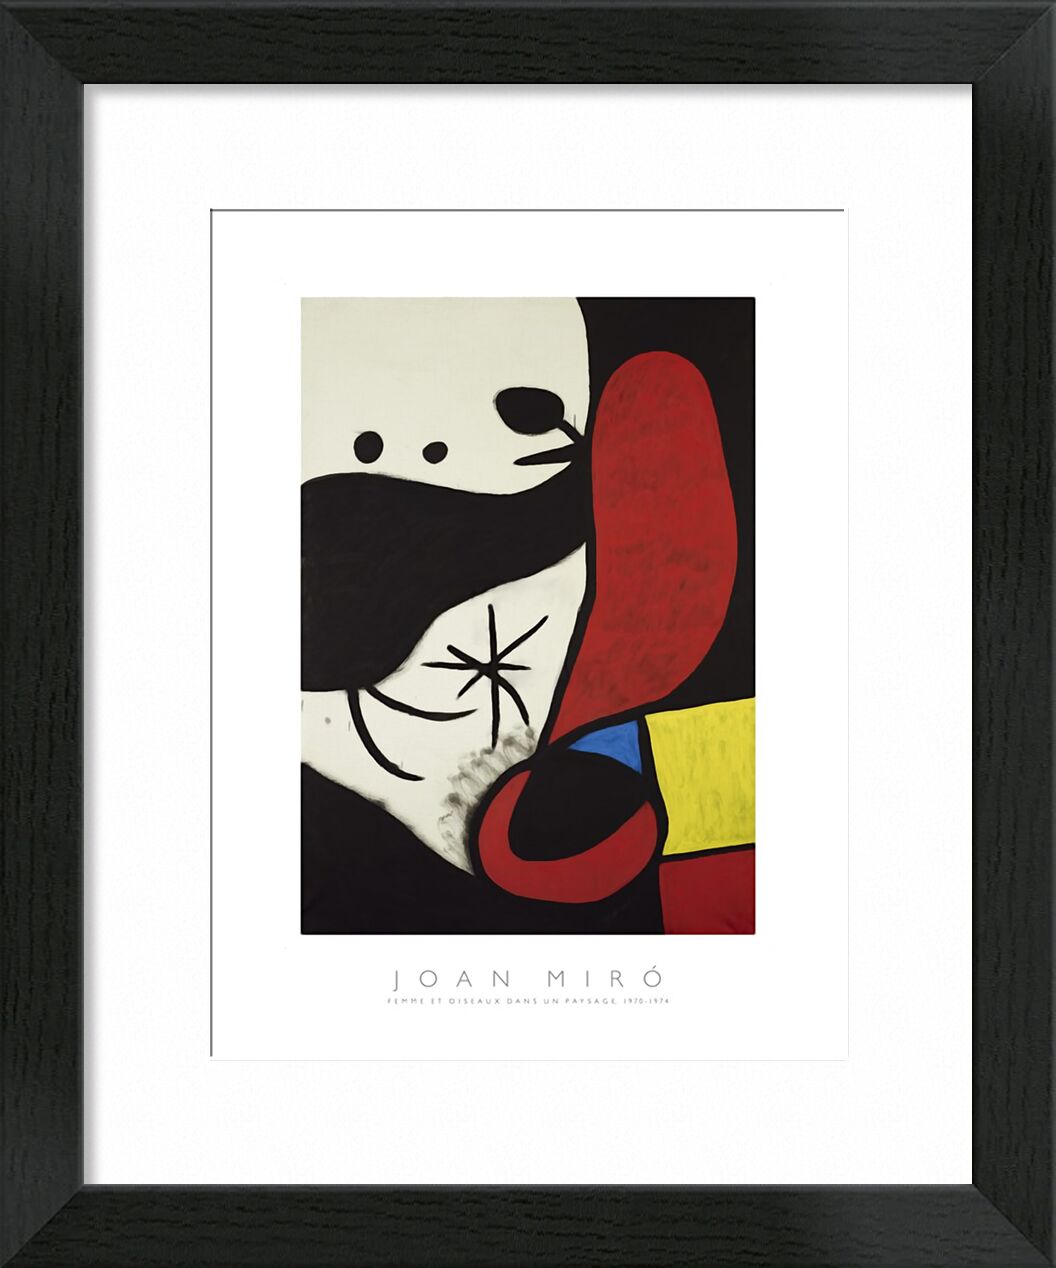 Women and Birds in a Landscape von Bildende Kunst, Prodi Art, Joan Miró, Malerei, abstrakt, Frau, Poster, Farben